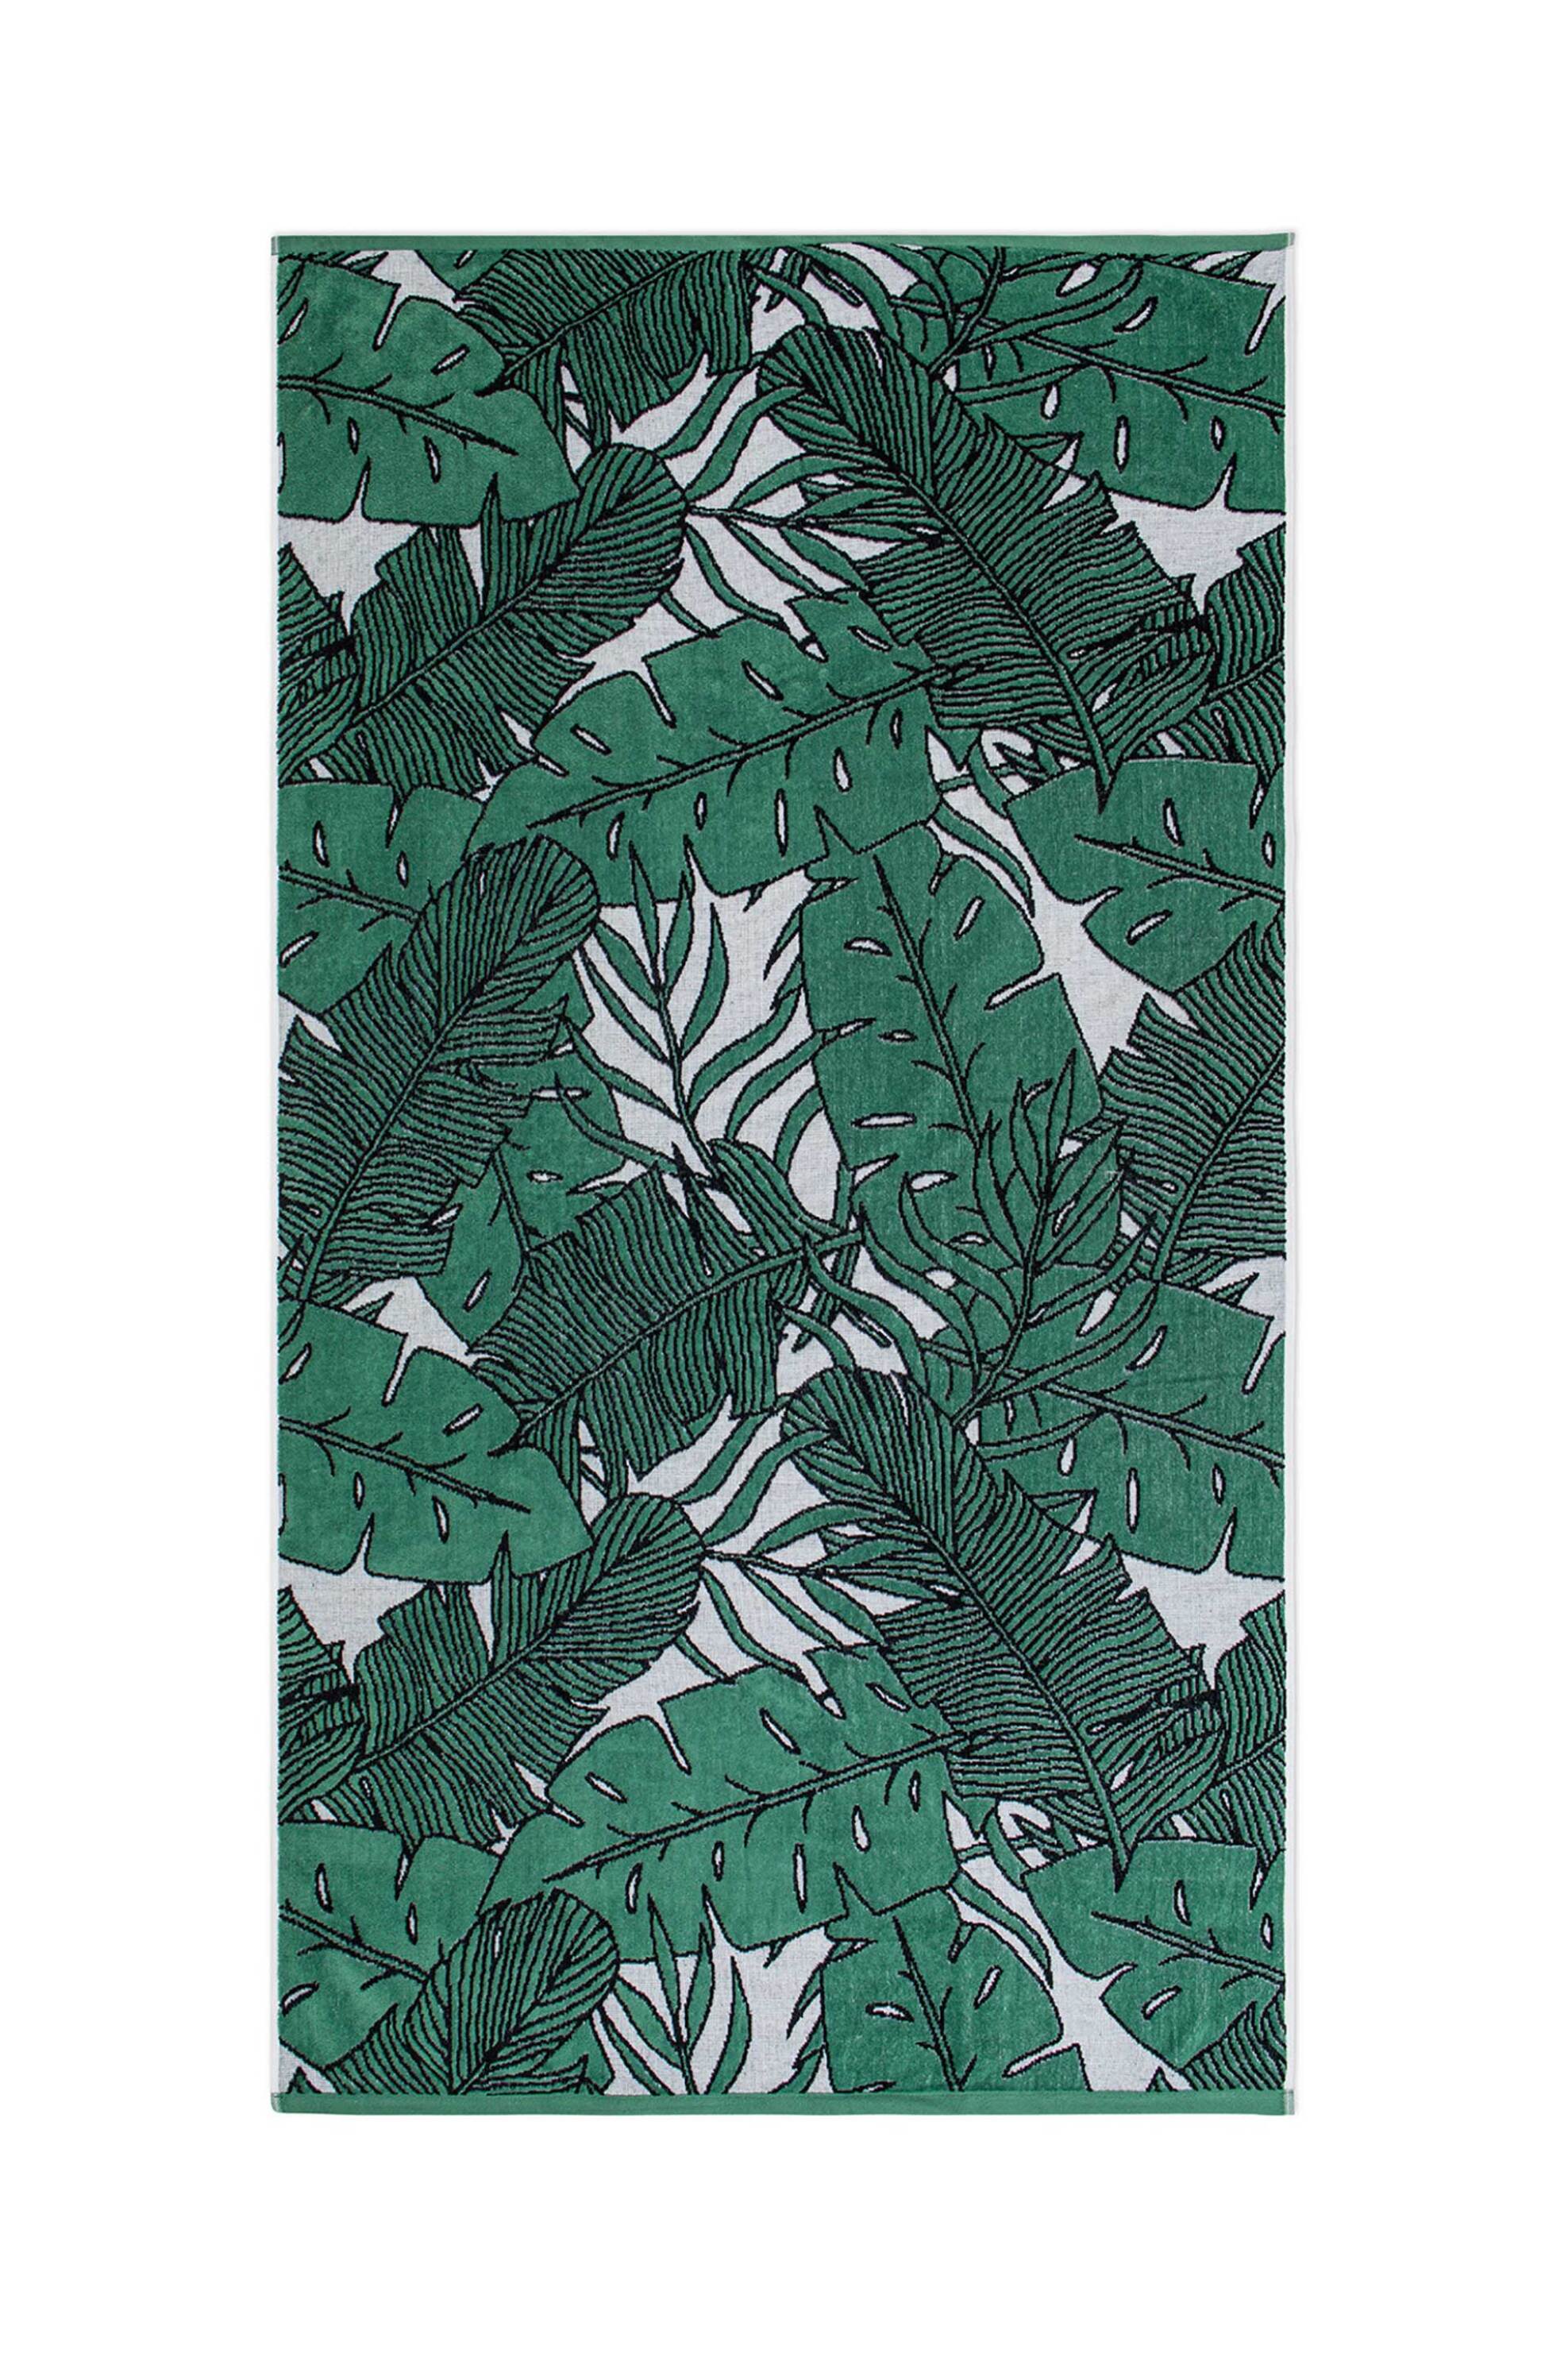 Γυναίκα > ΡΟΥΧΑ > Μαγιό & Αξεσουάρ Παραλίας > Πετσέτες Θαλάσσης Coincasa unisex πετσέτα θαλάσσης με tropical leave print 170 x 90 cm - 007363384 Πράσινο